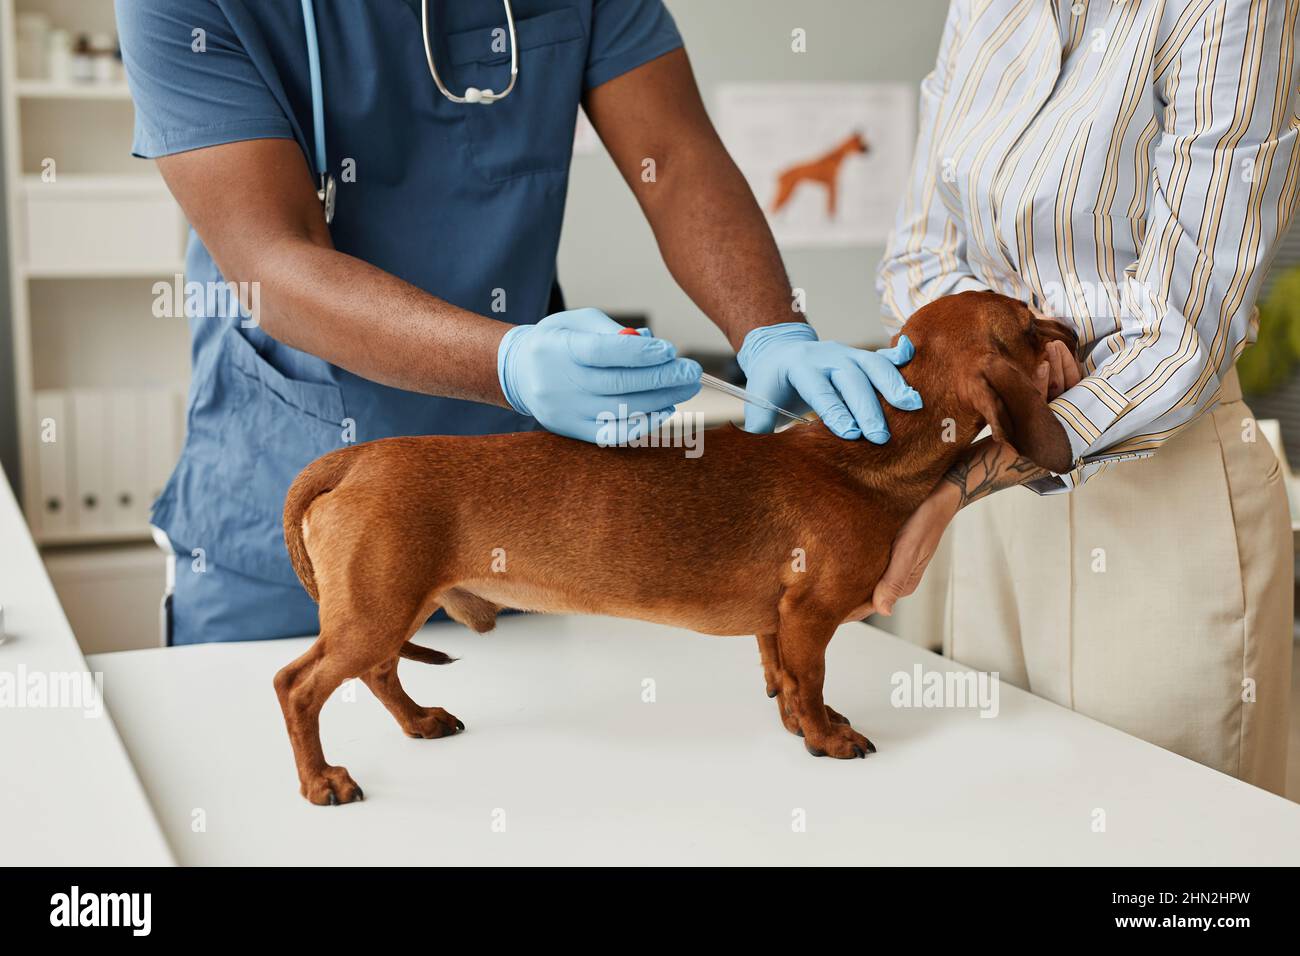 Tierbesitzer beruhigenden Dackel während der medizinischen Analyse, während Tierarzt mit Pipette Blut von kranken Tier für den Test Stockfoto